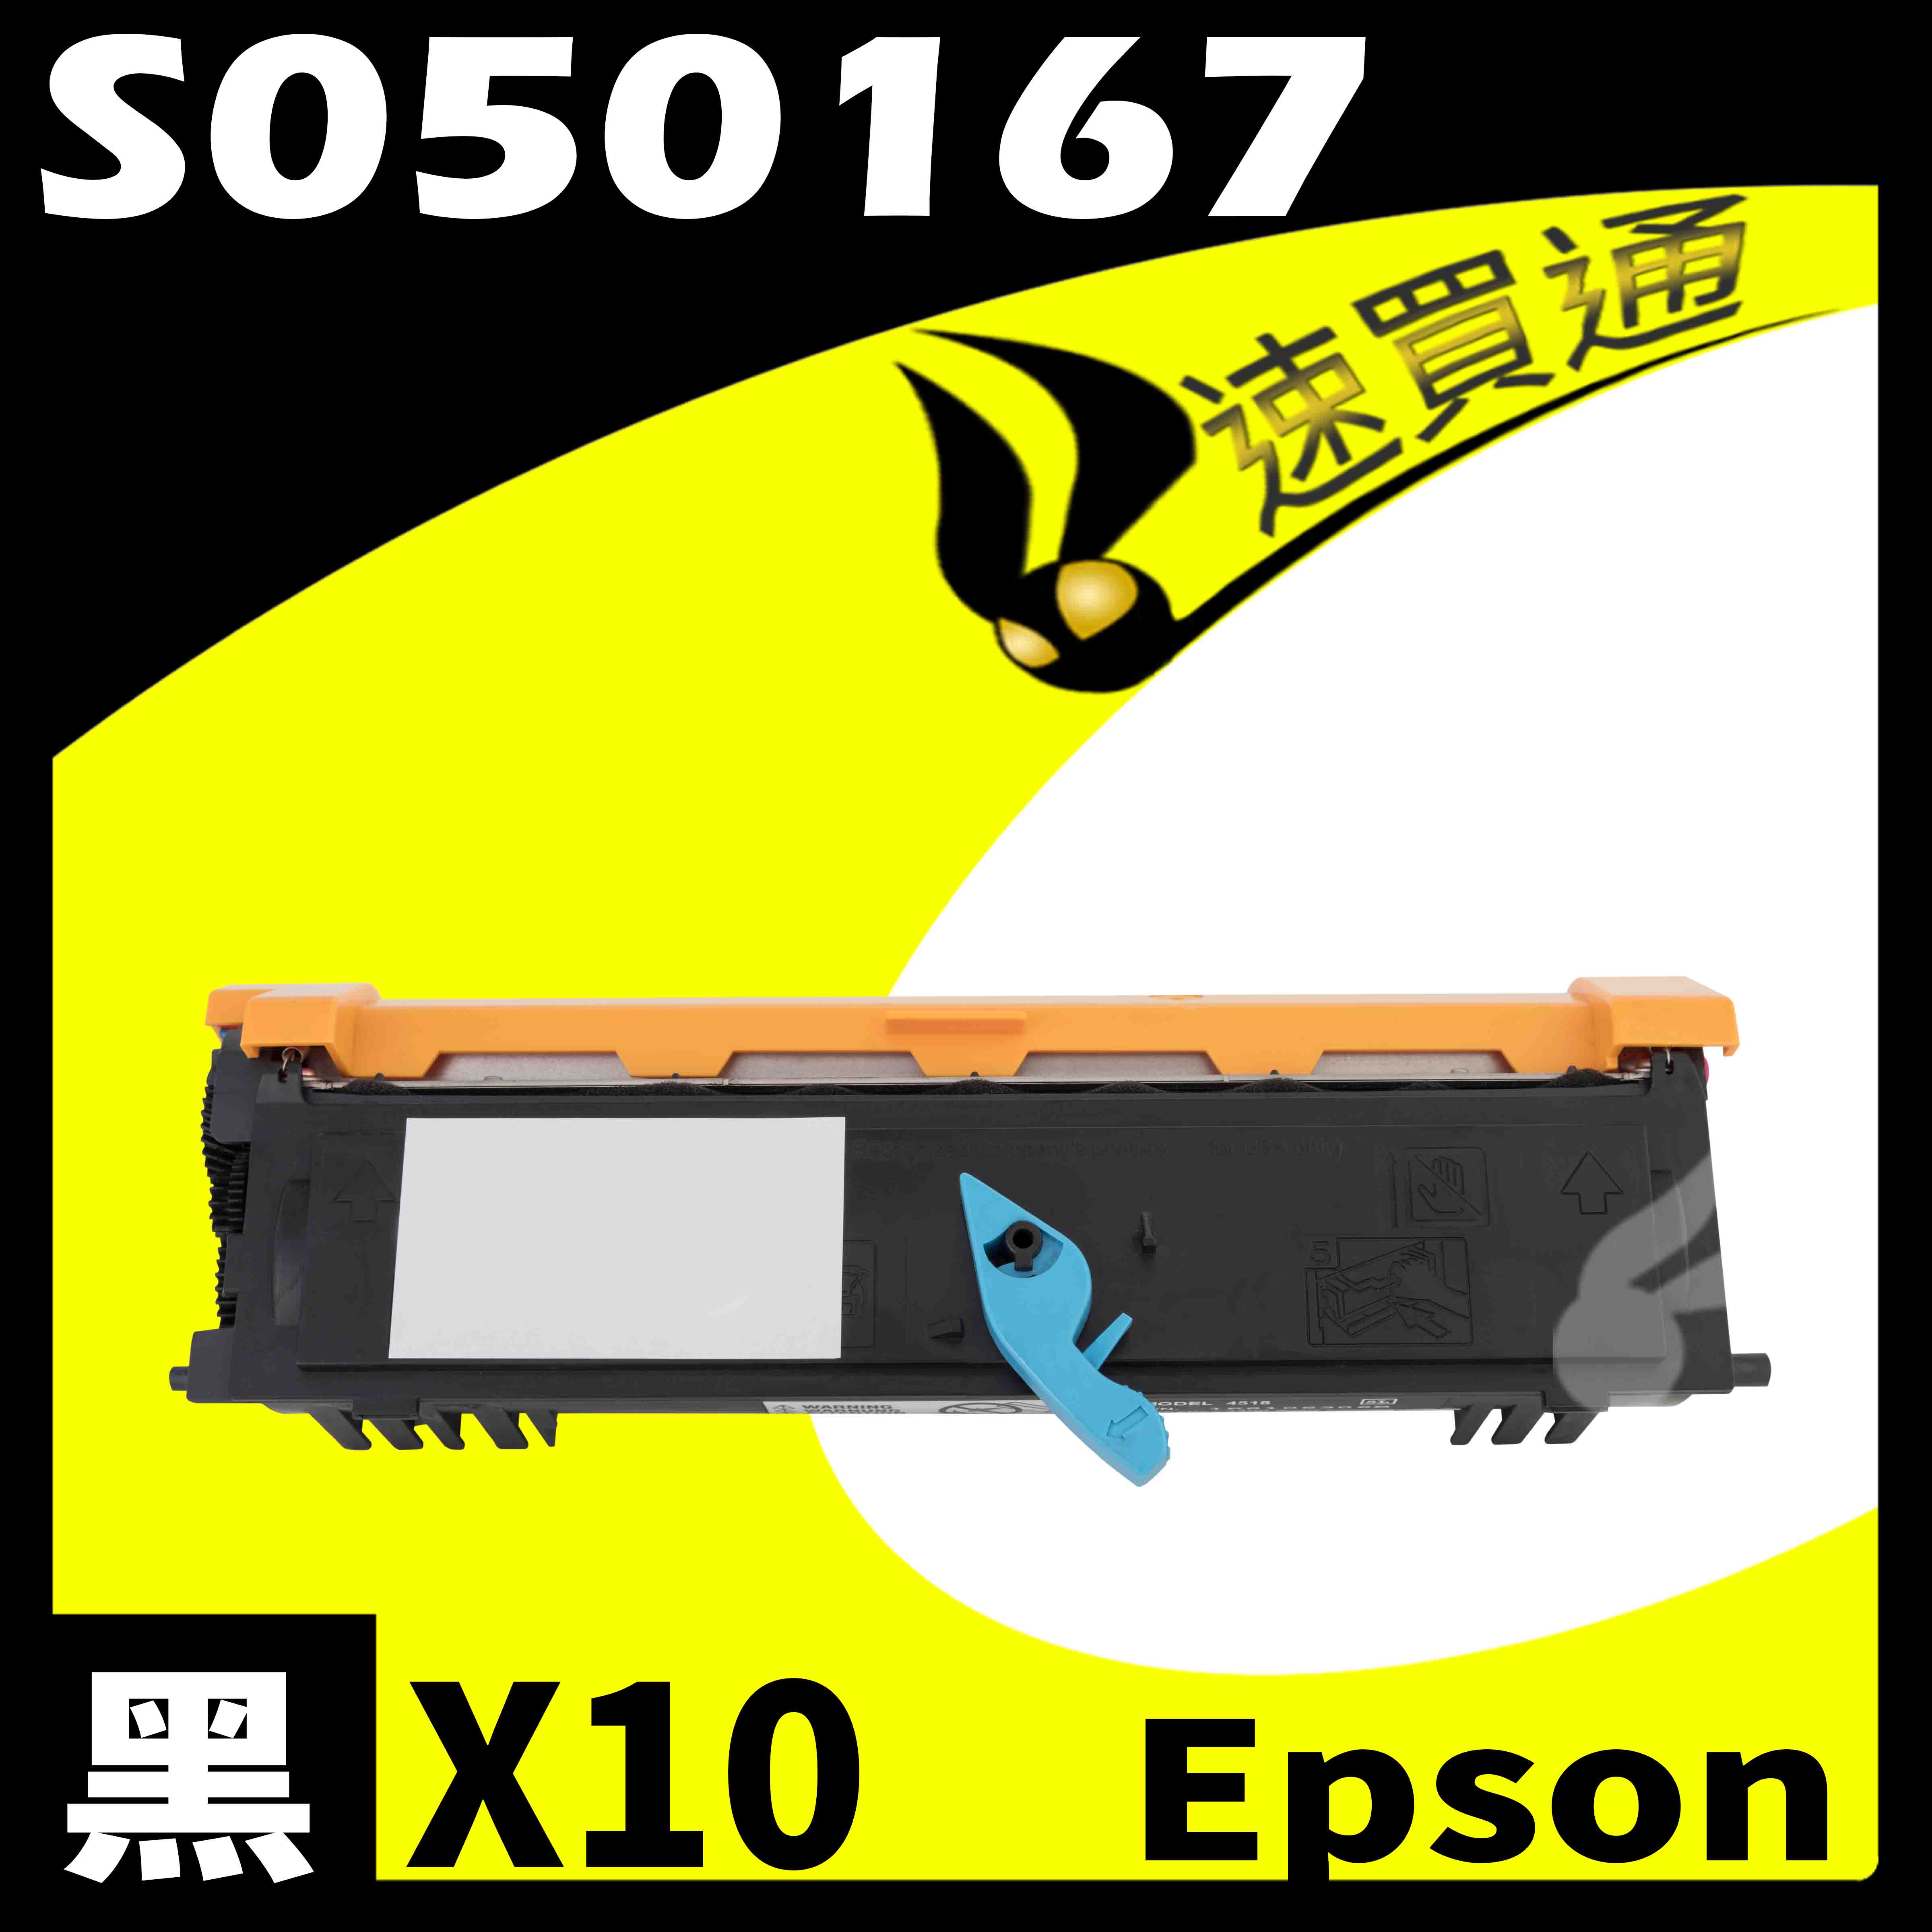 【速買通】超值10件組 EPSON 6200/6200L/S050167 (低階) 相容碳粉匣